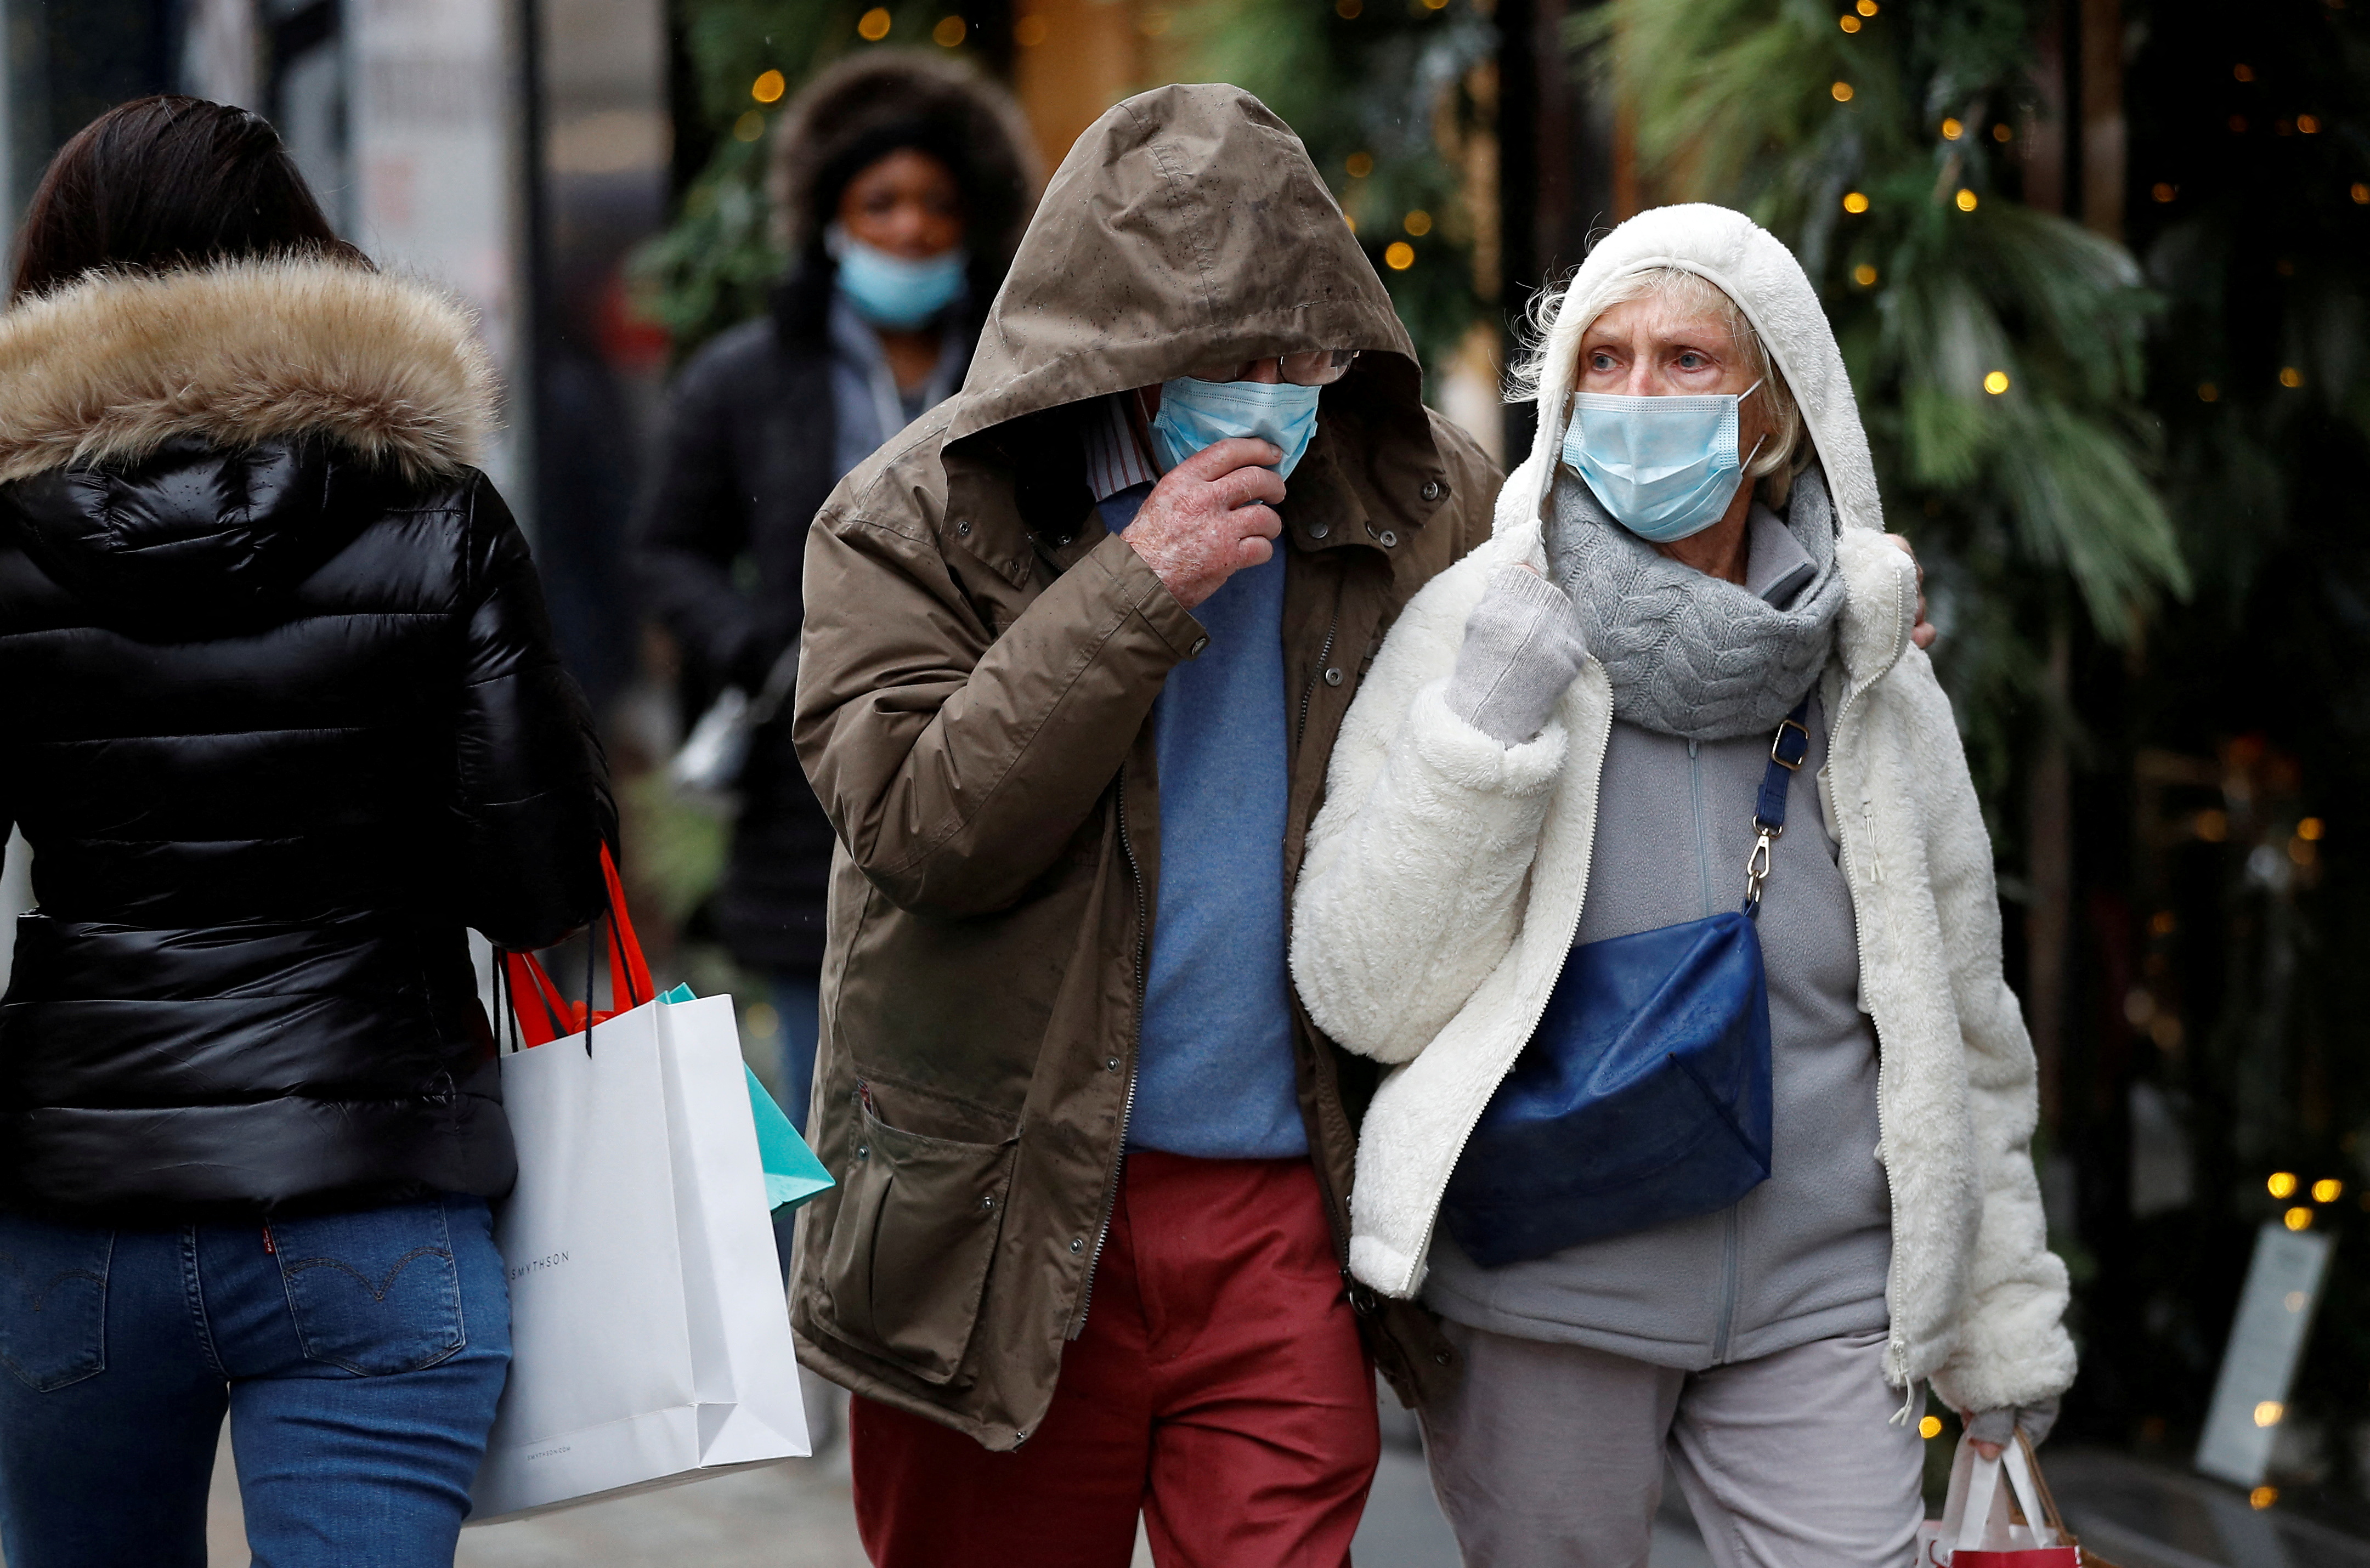 В Лондоне за рождественскими подарками – только в масках. Впрочем, как и почти везде. Фото: REUTERS/Peter Nicholls/File Photo